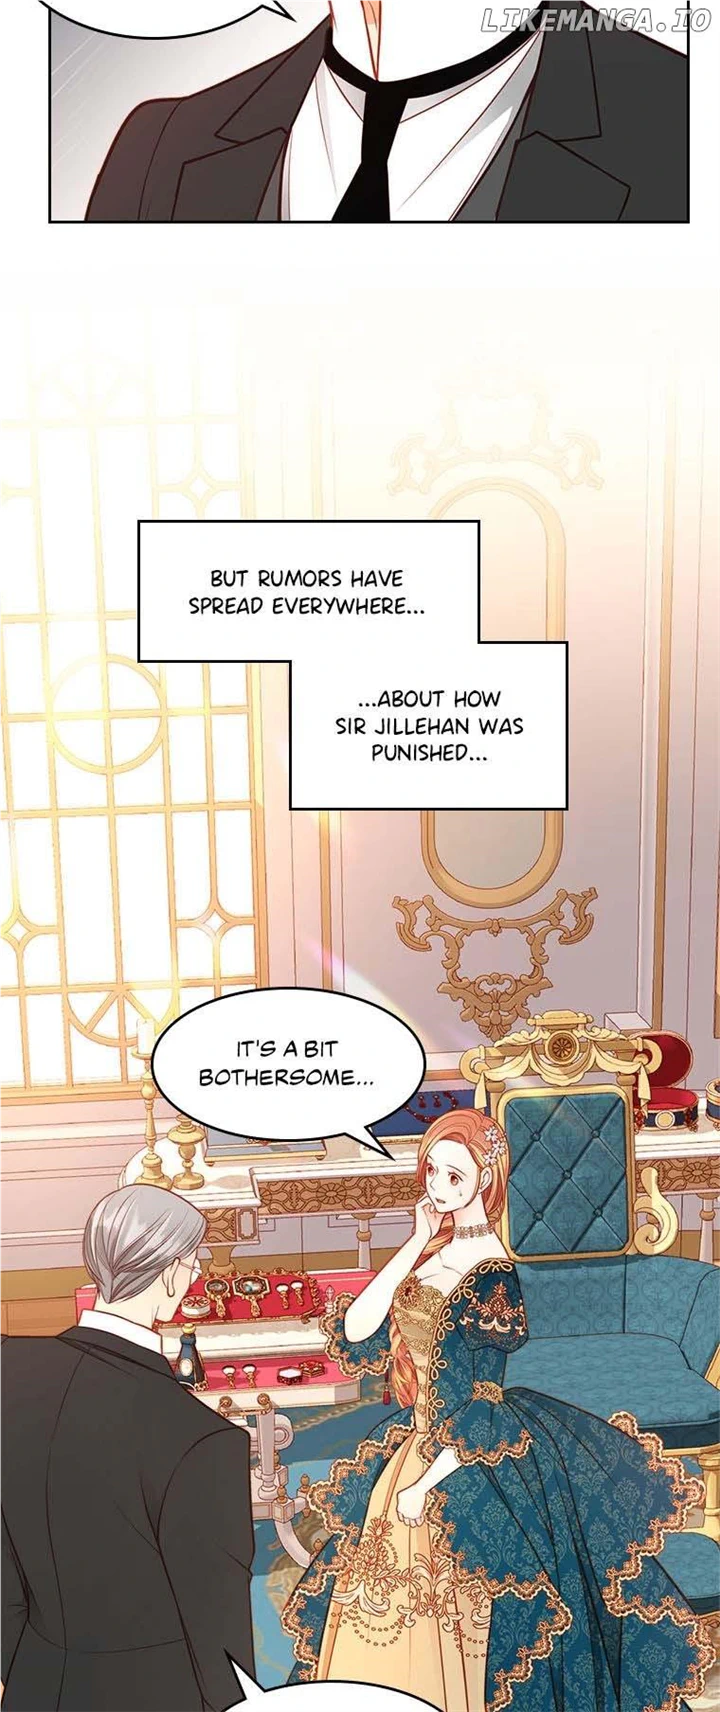 The Duchess’s Secret Dressing Room chapter 68